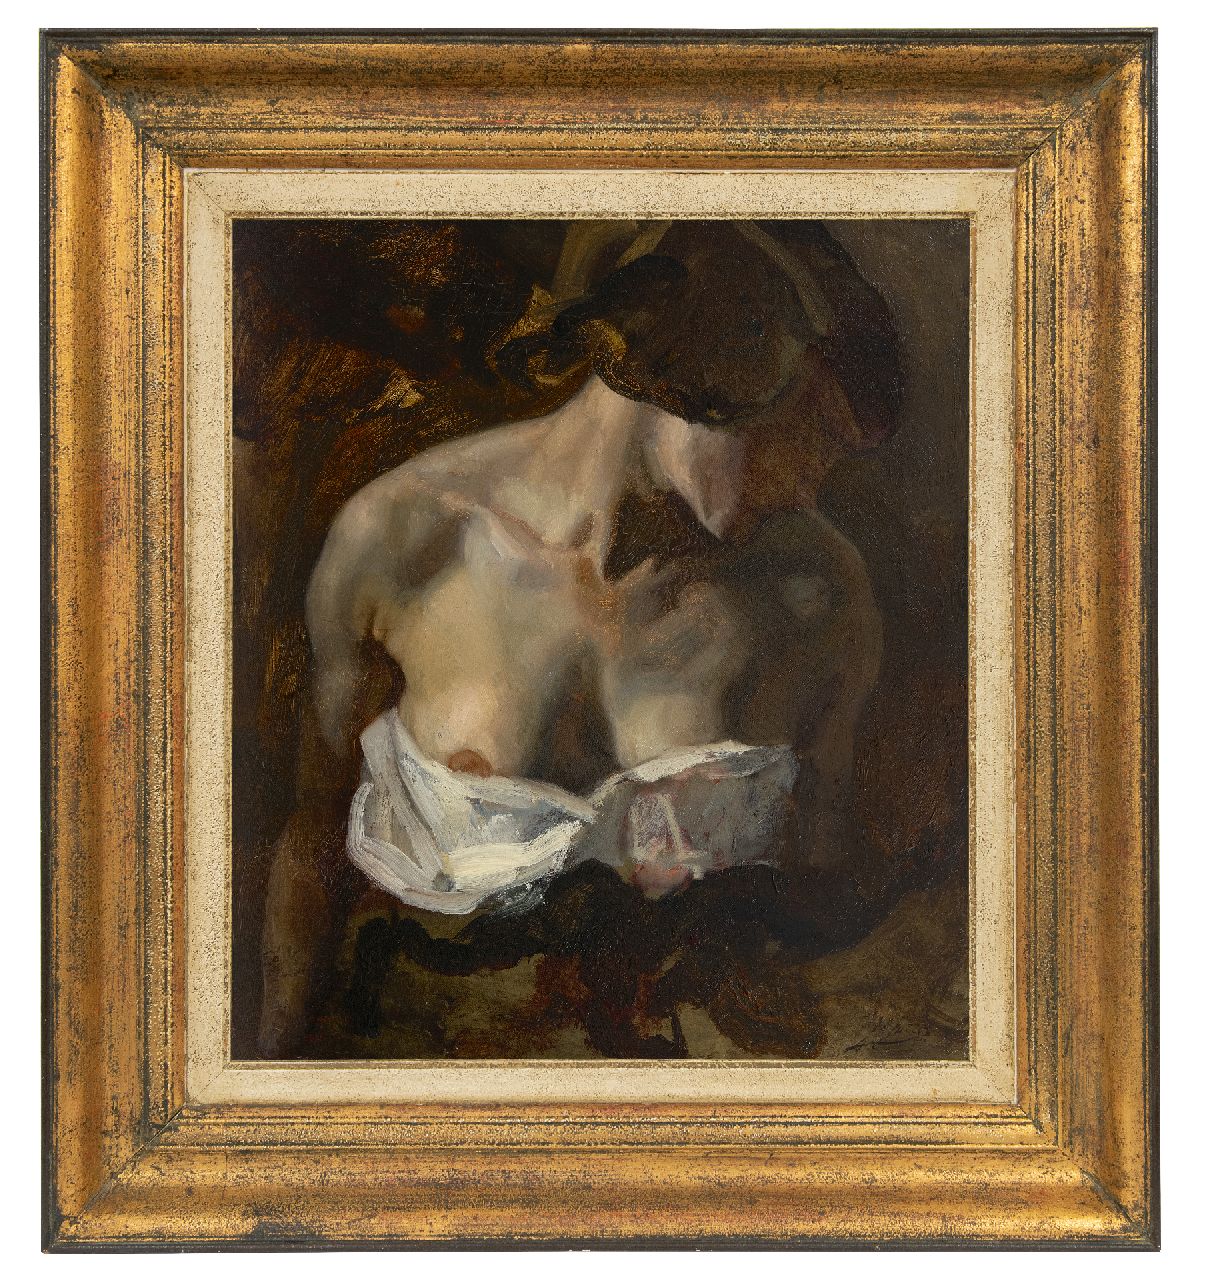 Jurres J.H.  | Johannes Hendricus Jurres | Schilderijen te koop aangeboden | Delilah met ontblote borst (studie voor Samson en Delilah), olieverf op doek 52,3 x 45,5 cm, gesigneerd rechtsonder